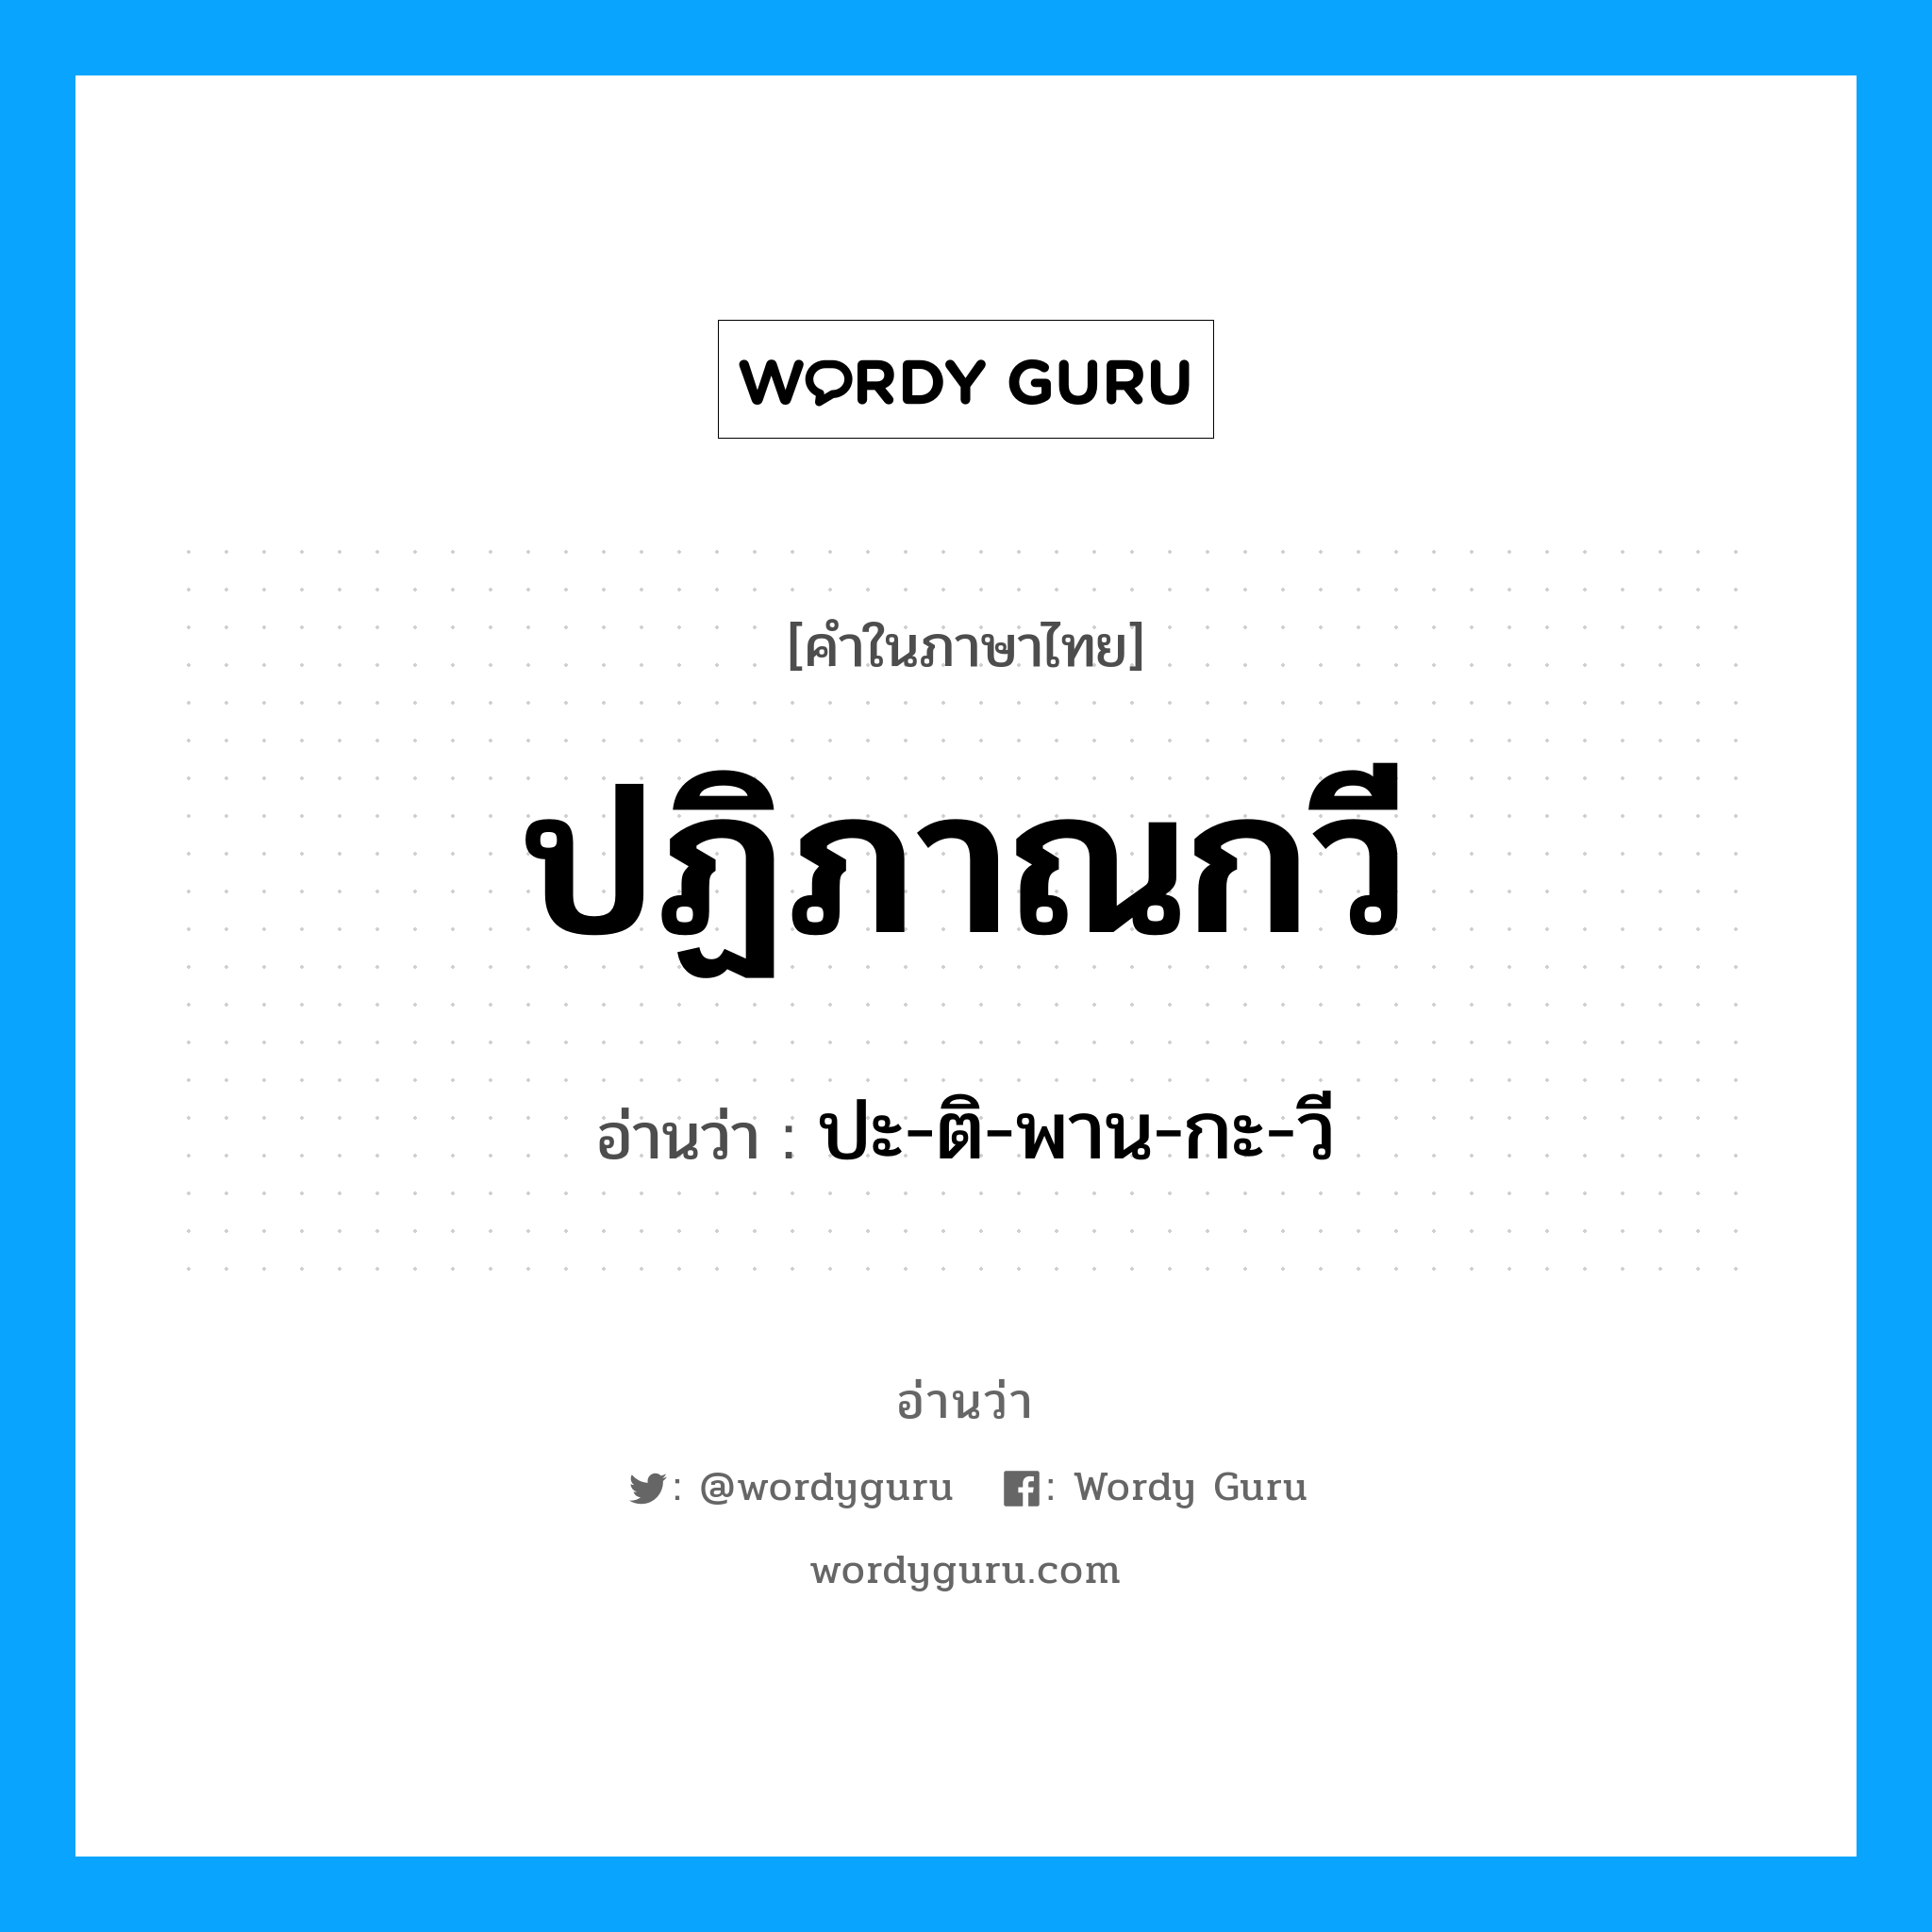 ปะ-ติ-พาน-กะ-วี เป็นคำอ่านของคำไหน?, คำในภาษาไทย ปะ-ติ-พาน-กะ-วี อ่านว่า ปฏิภาณกวี